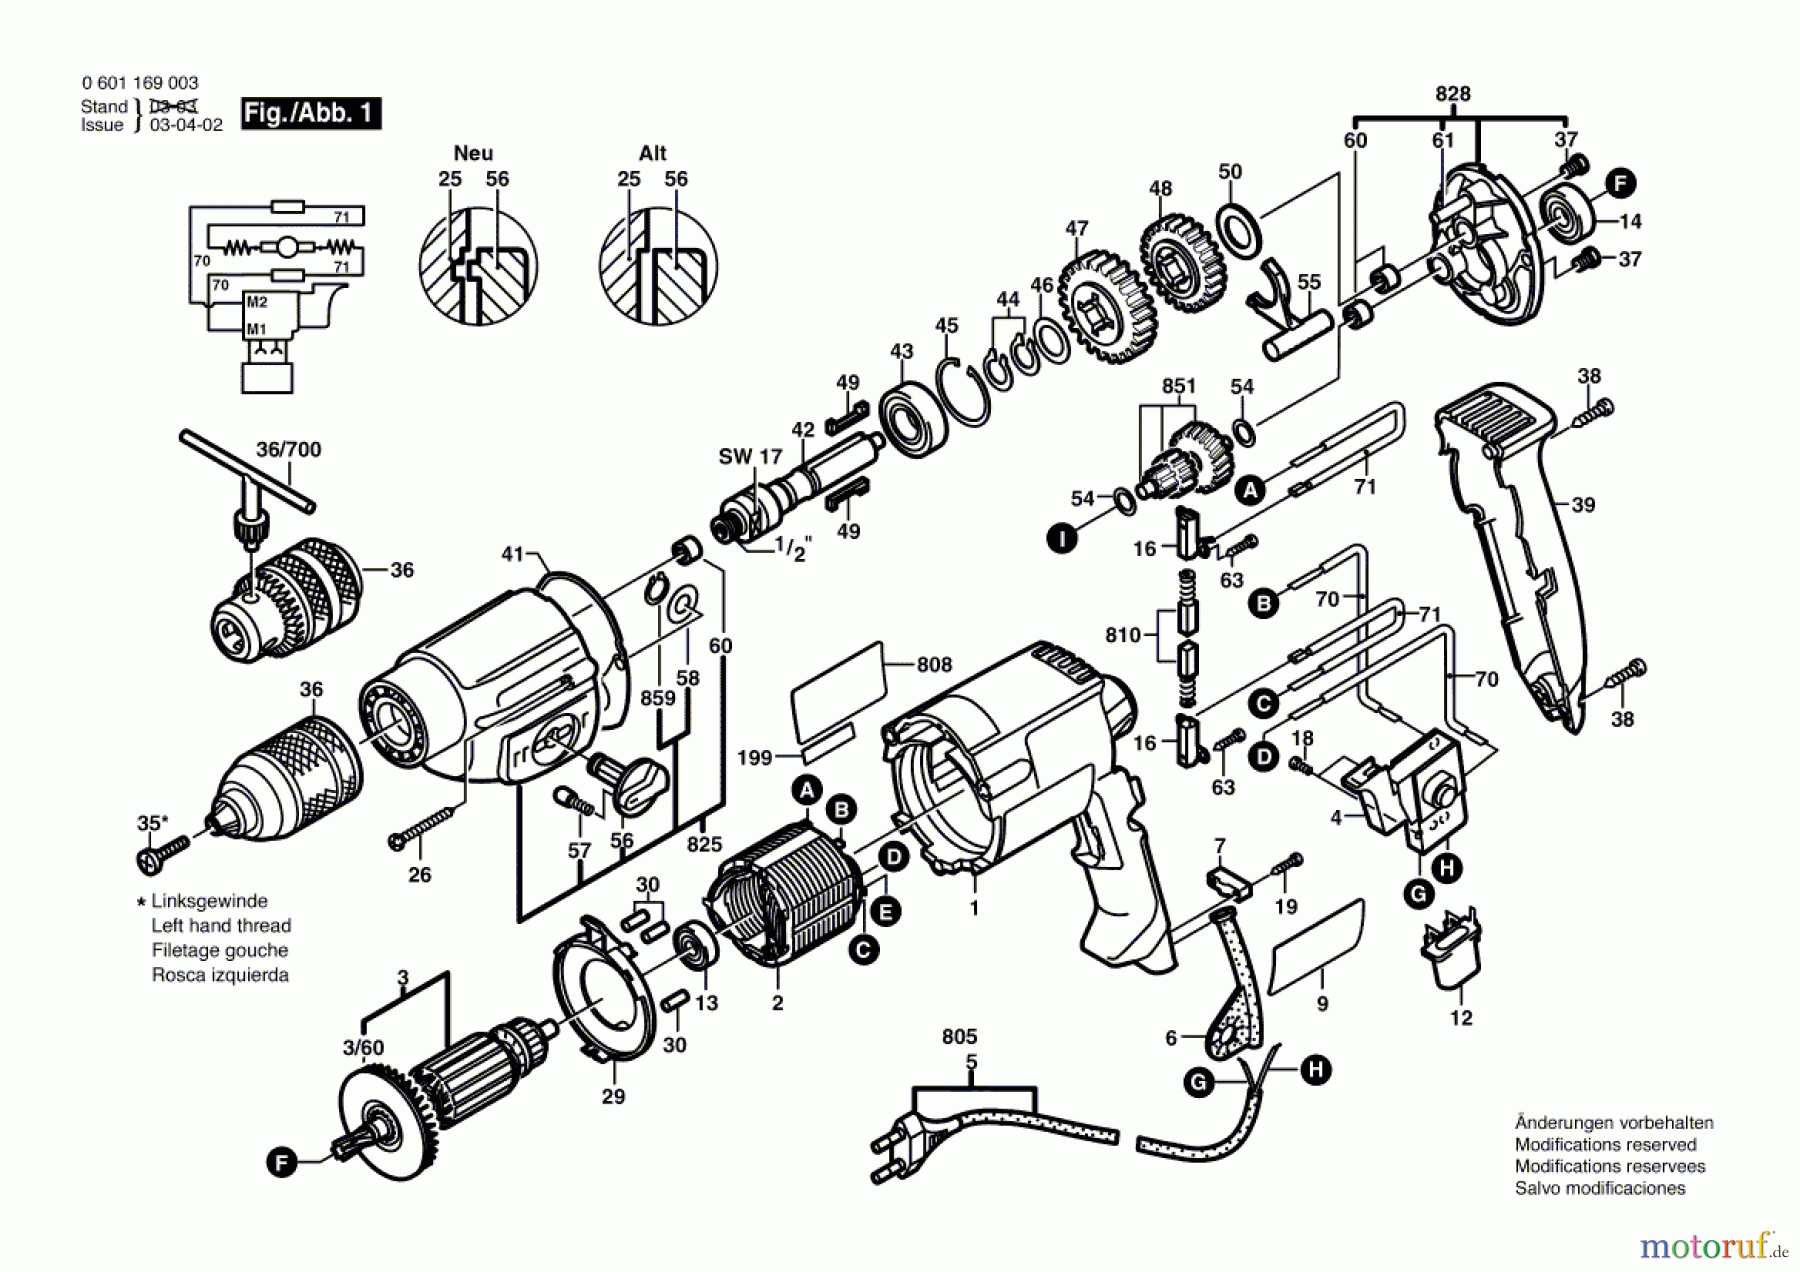  Bosch Werkzeug Bohrmaschine GBM 13-2 Seite 1